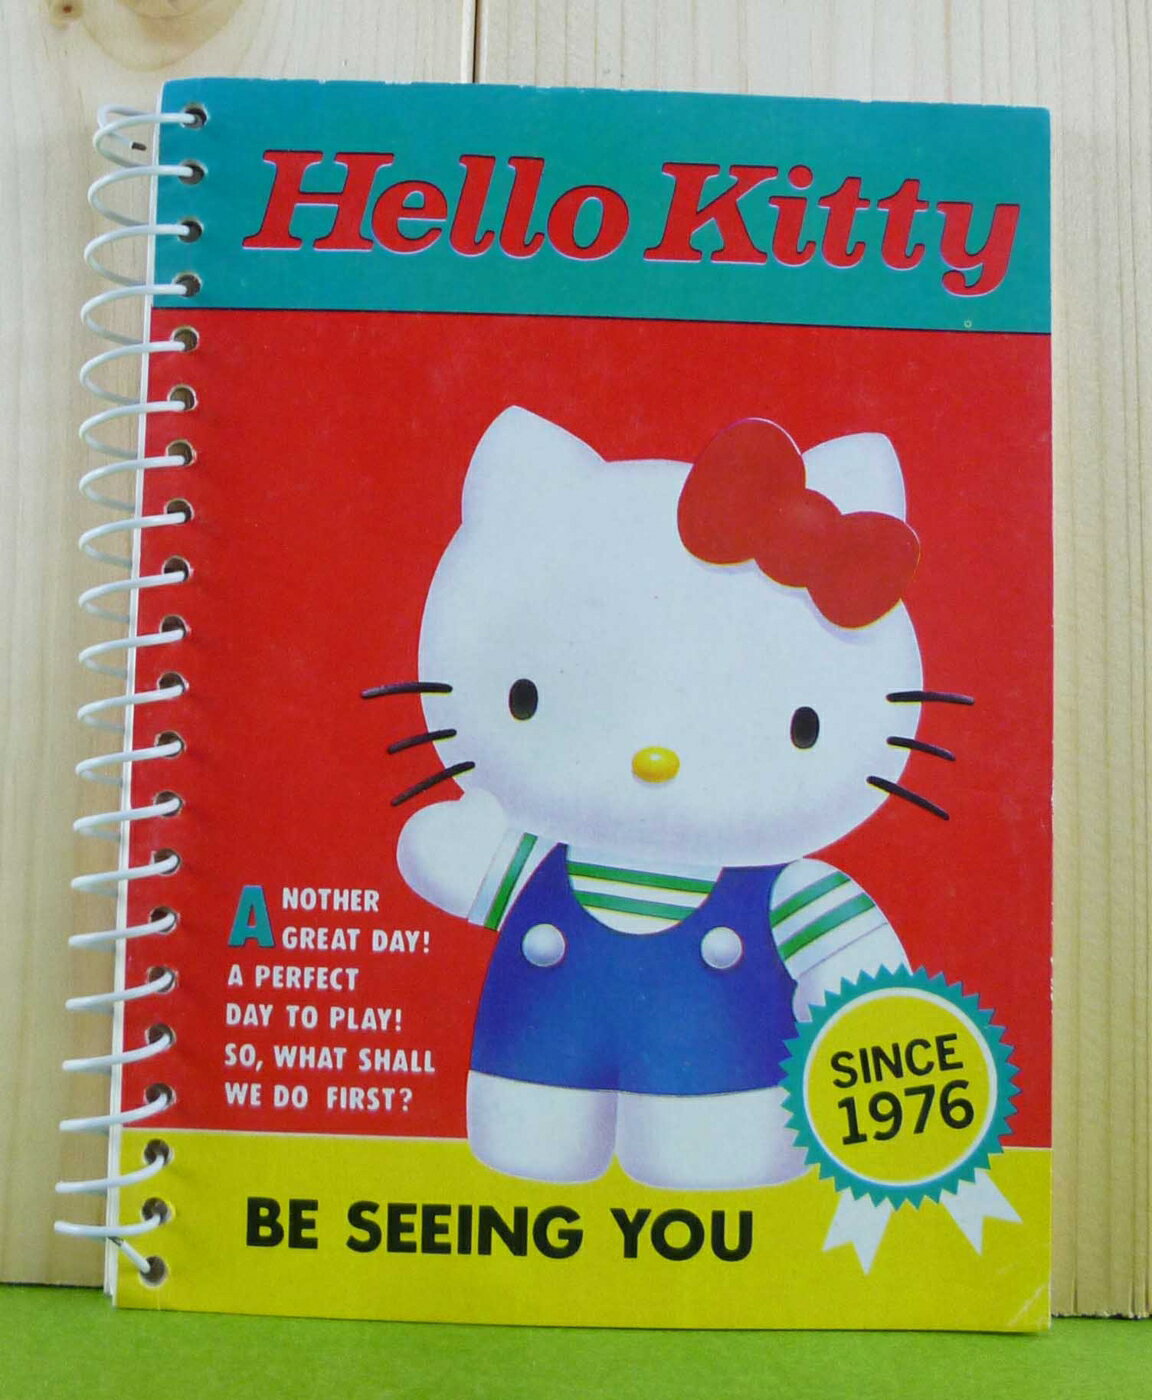 【震撼精品百貨】Hello Kitty 凱蒂貓 筆記本 站 紅【共1款】 震撼日式精品百貨